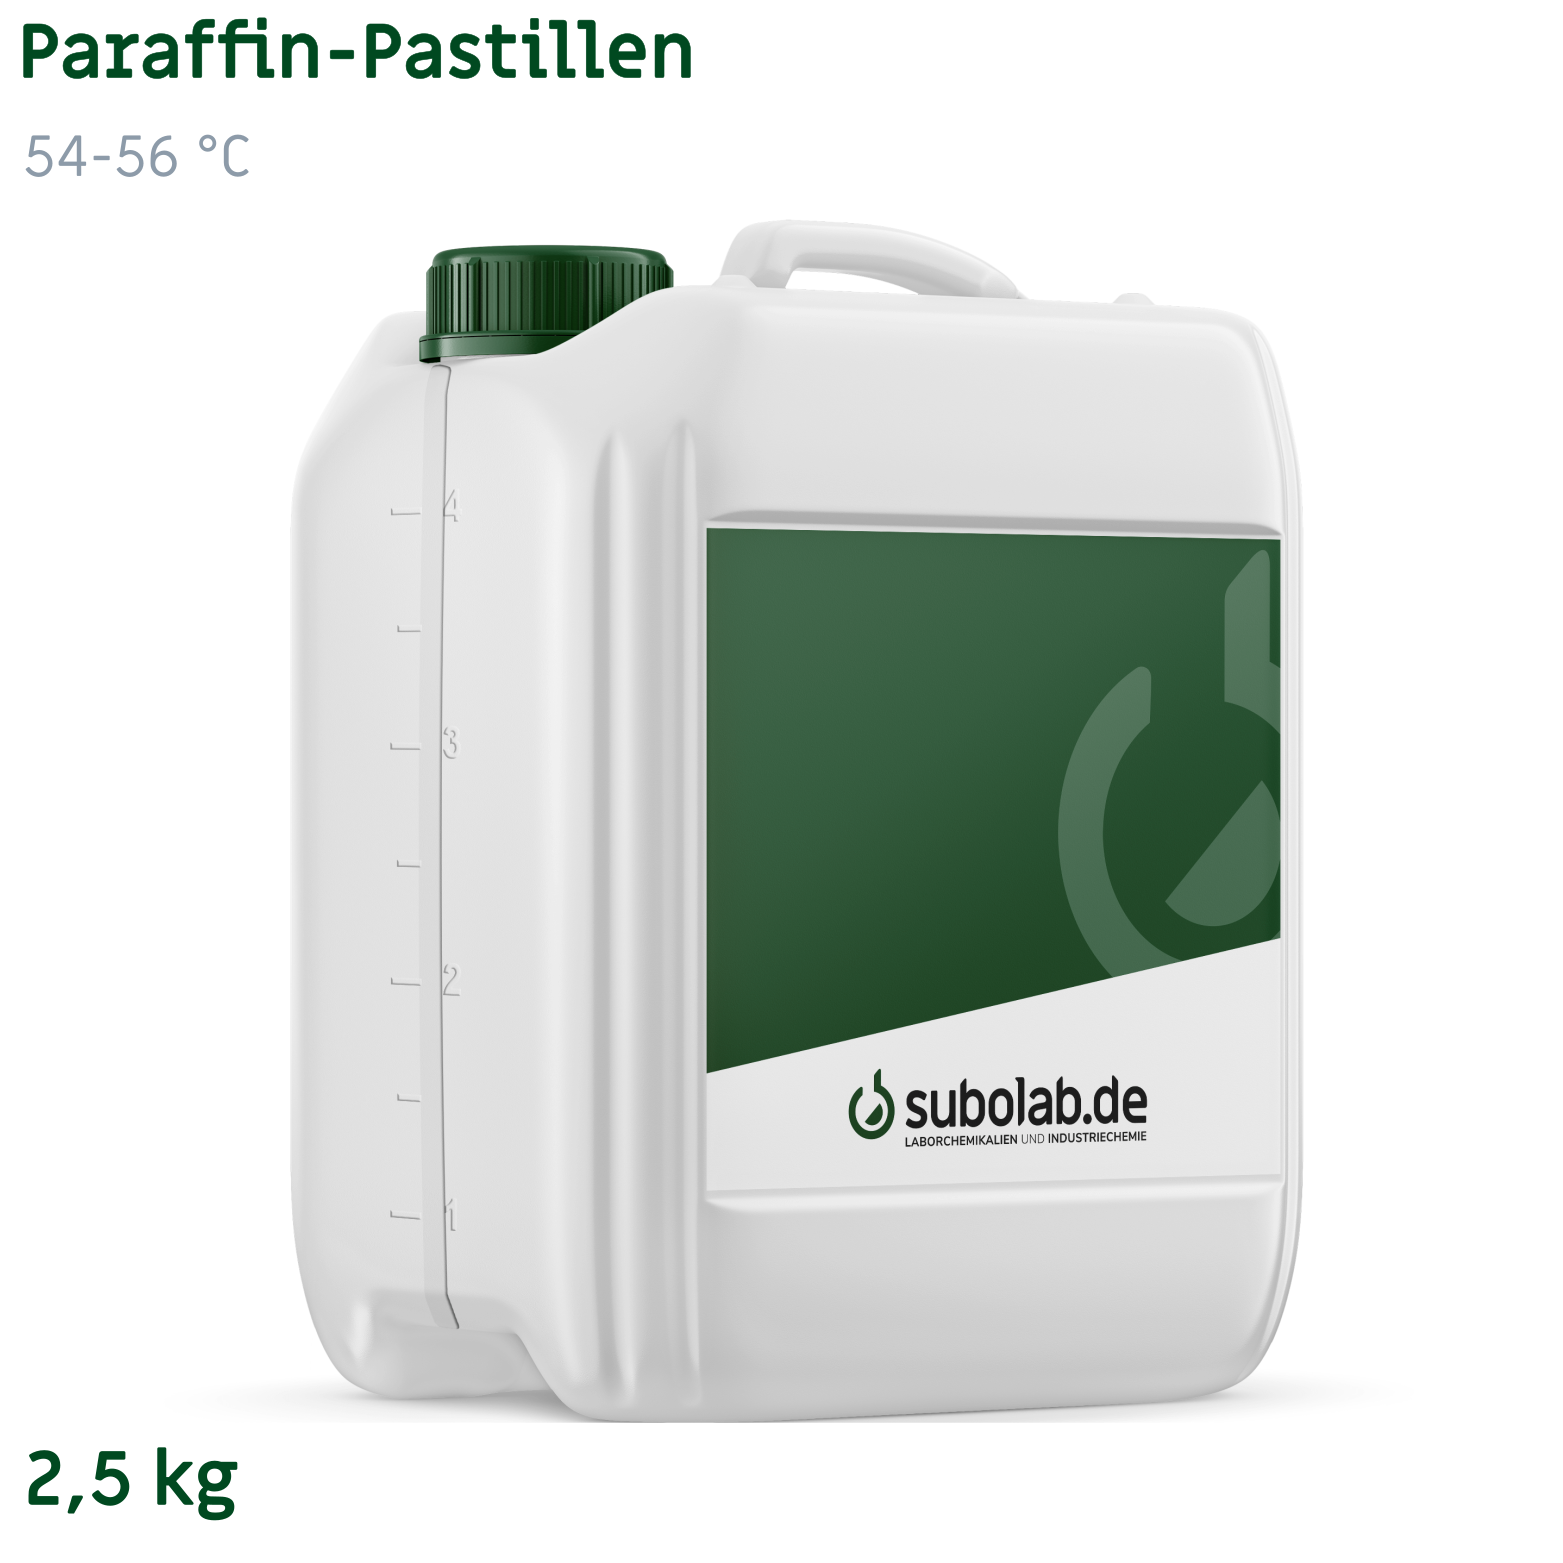 Bild von Paraffin - Pastillen 54-56 °C (2,5 kg)